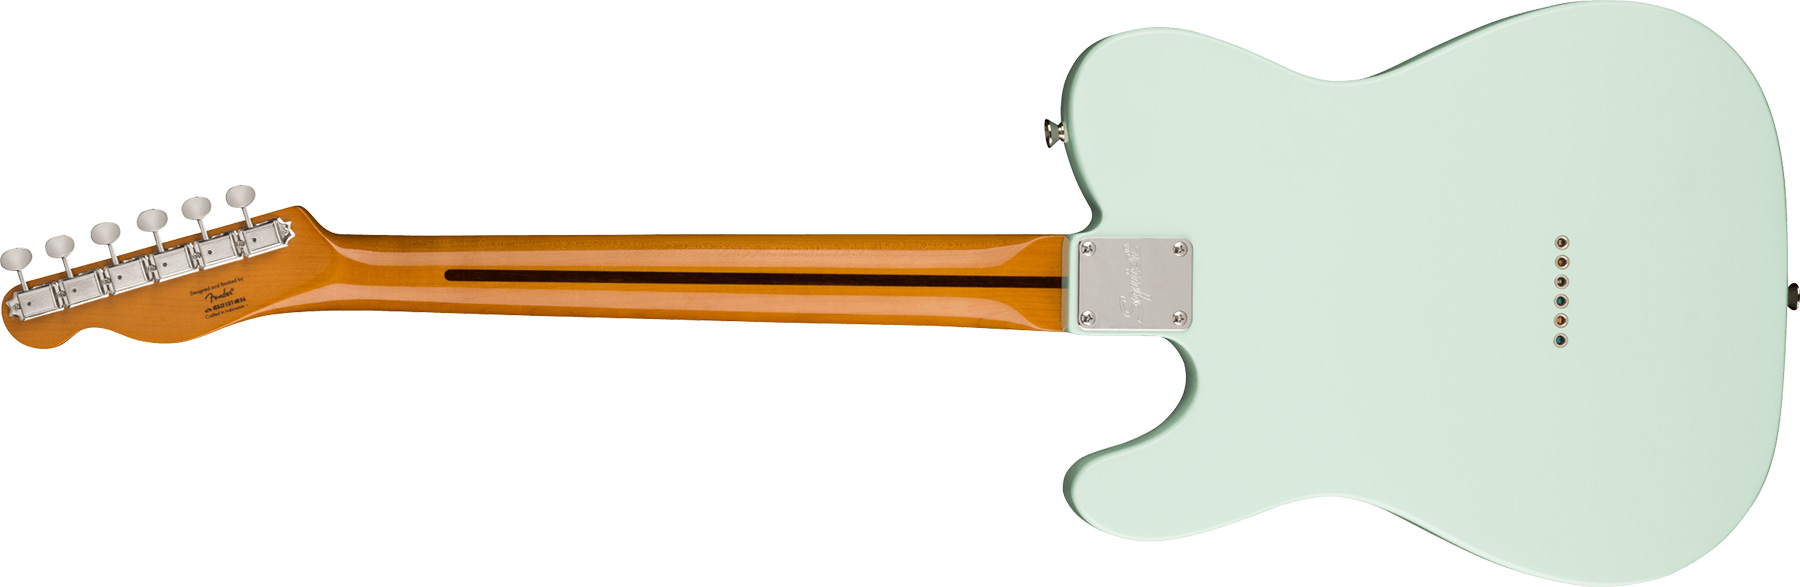 Squier Tele '50s Parchment Pickguard Classic Vibe Fsr 2s Ht Mn - Sonic Blue - Televorm elektrische gitaar - Variation 1